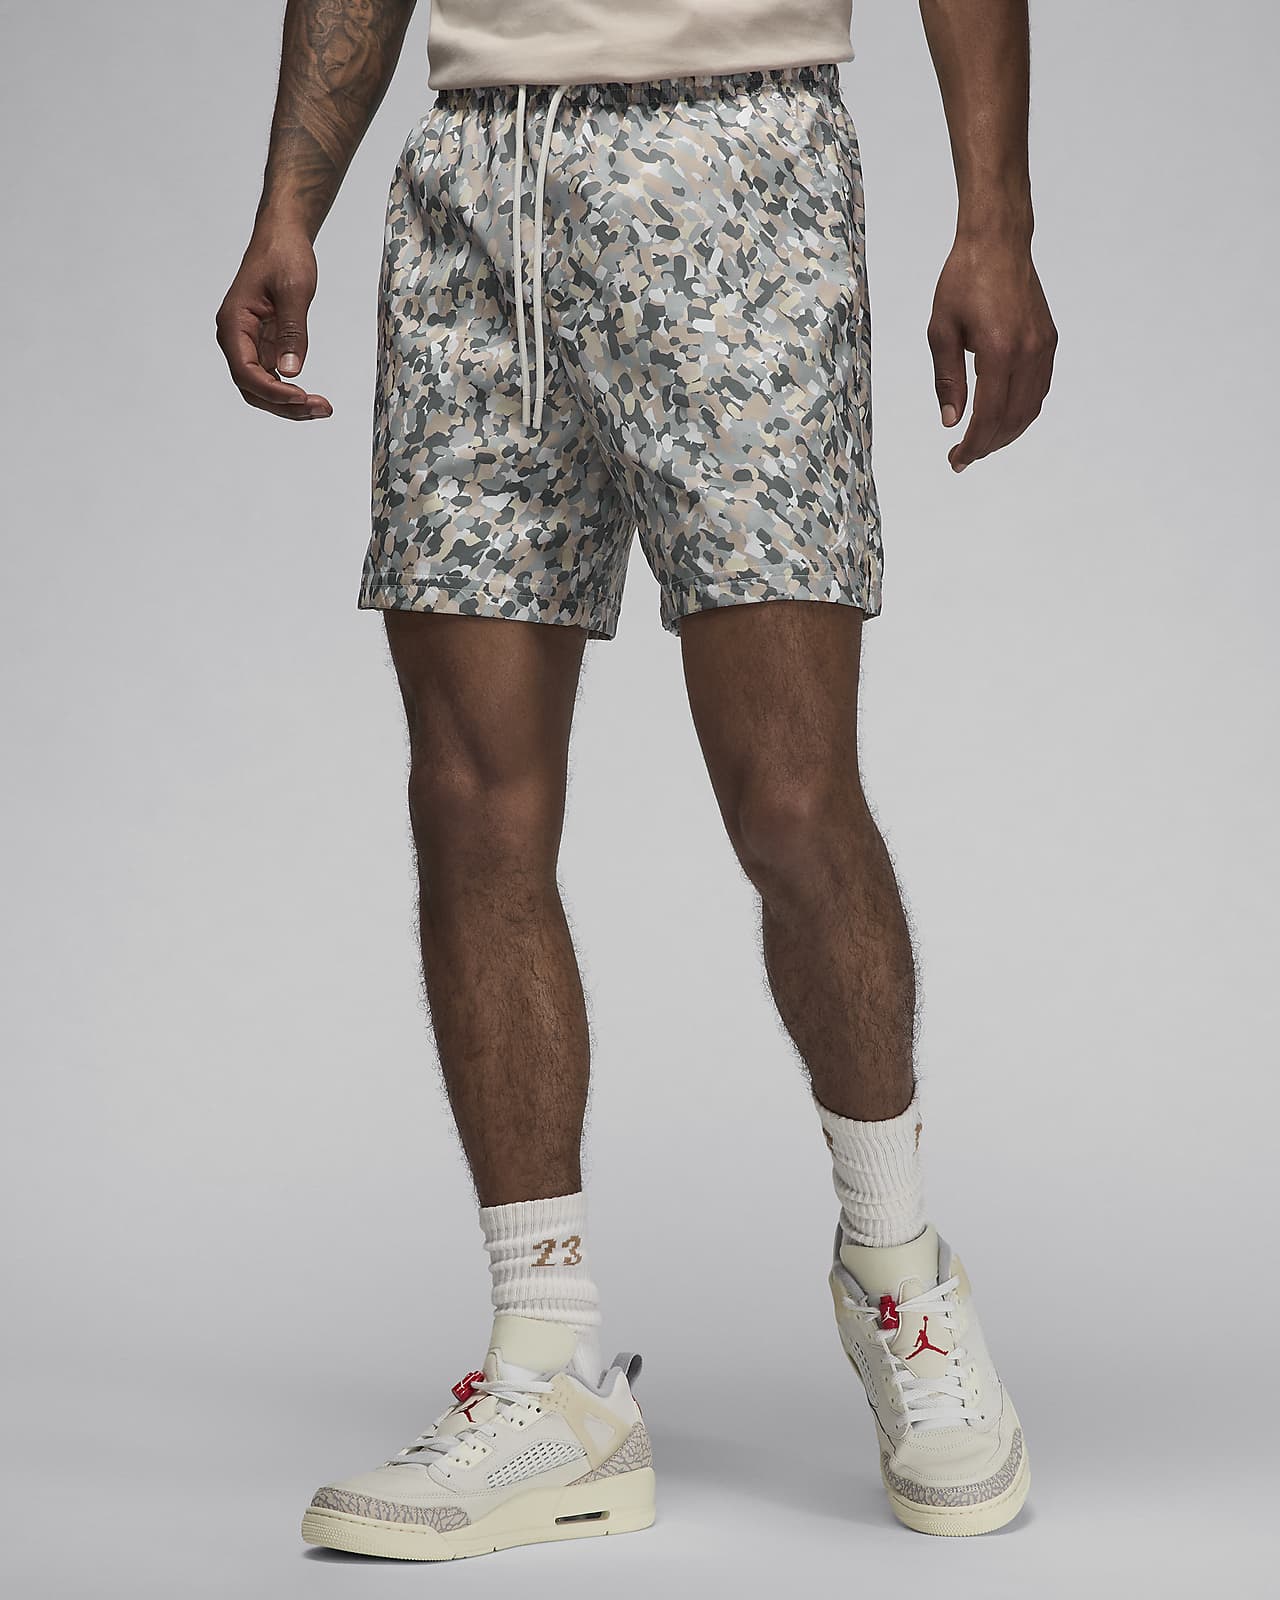 Jordan Essentials Men's Poolside Shorts